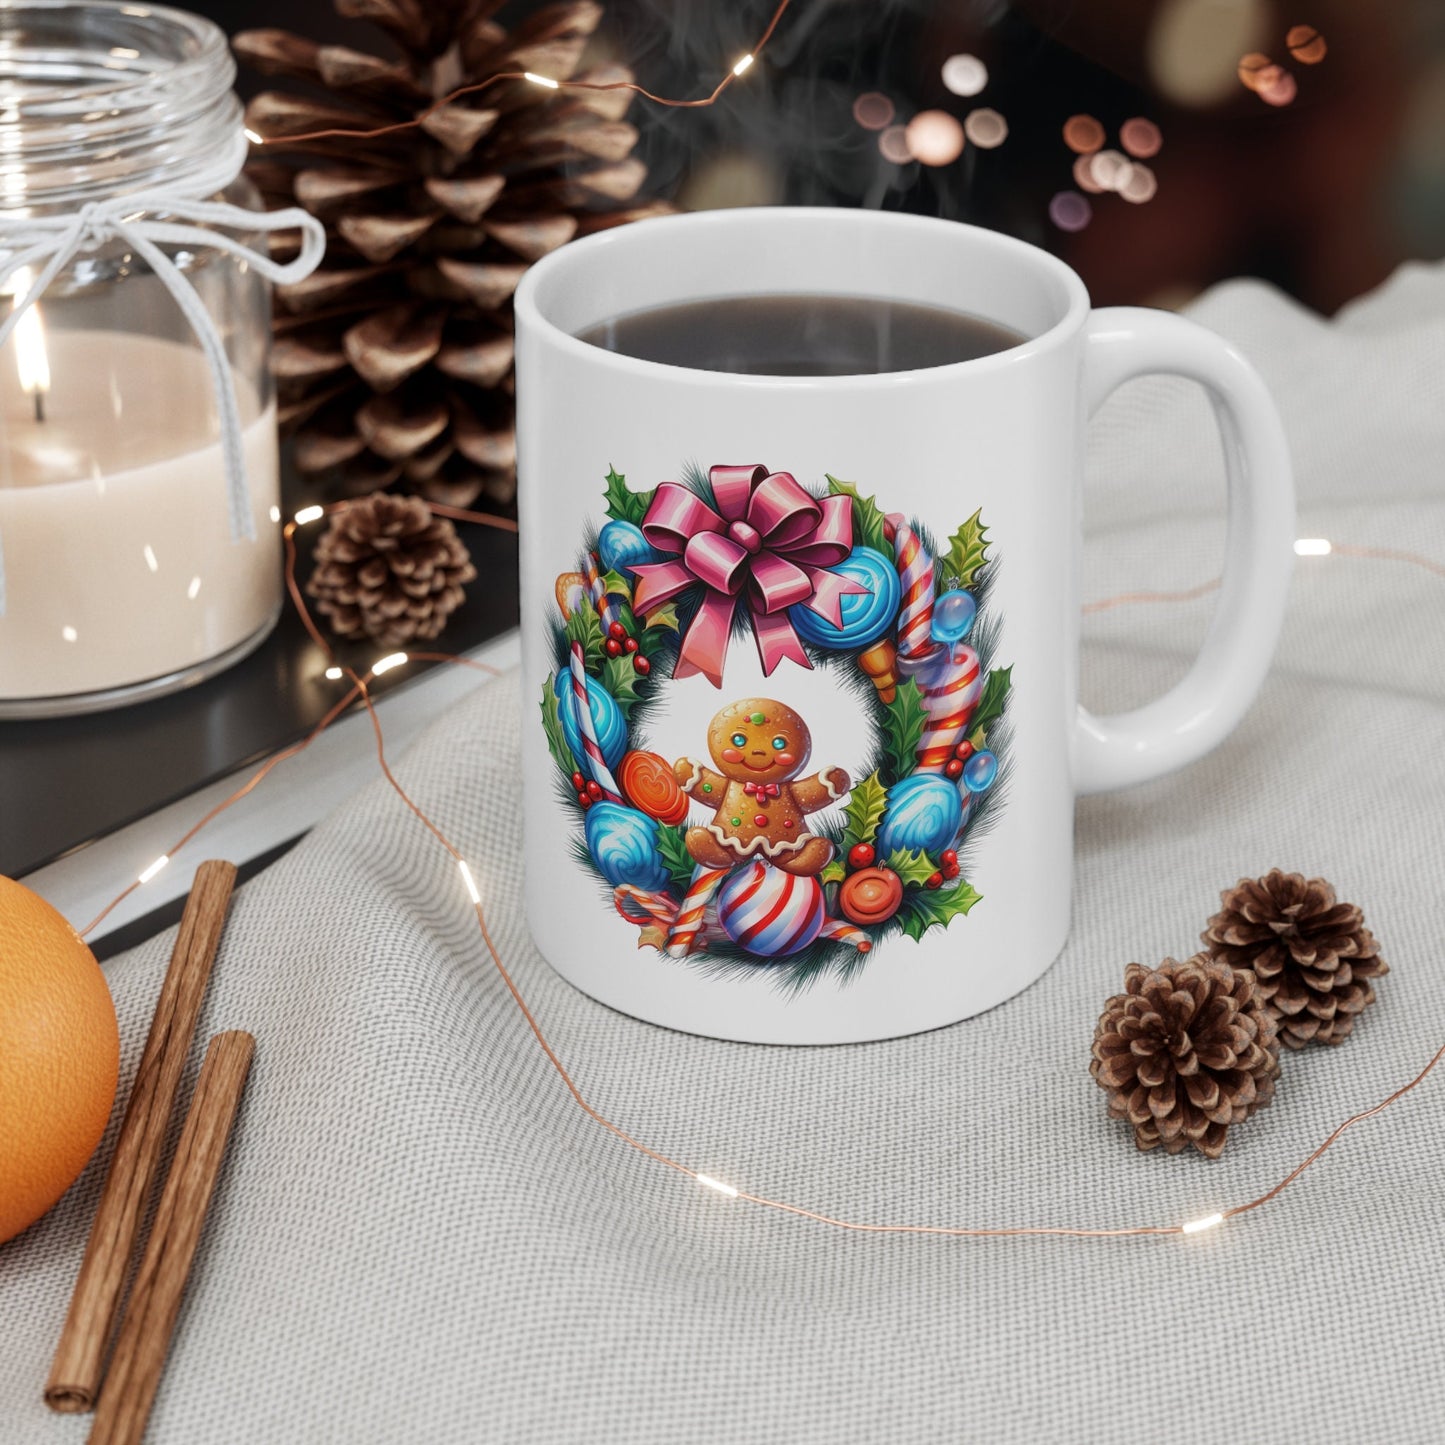 Holiday reef Gingerbread man Mug, Perfect Holiday Cheer Coffee Mug, Gift Mug for Christmas Spirit, Cute Christmas mug for Family and friends